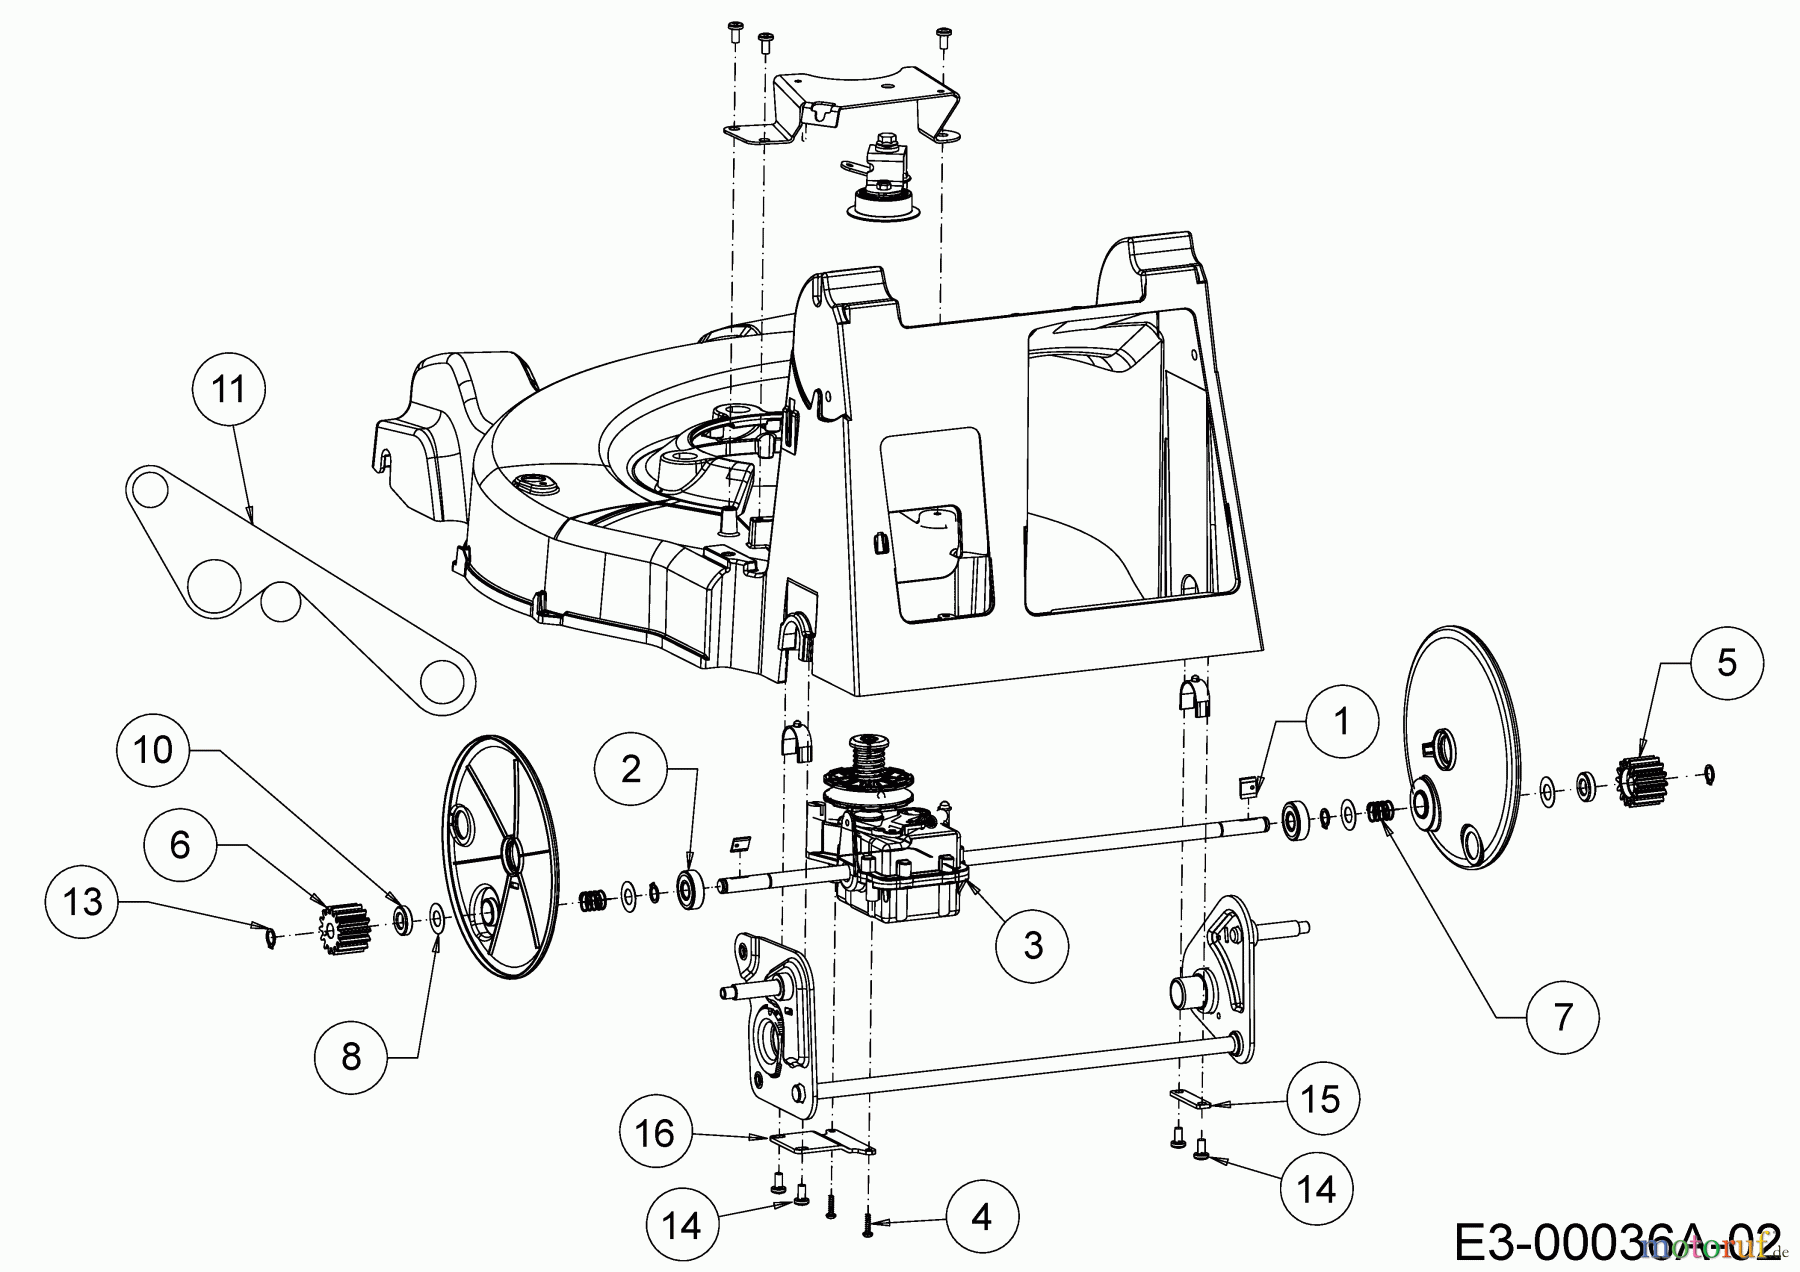  WOLF-Garten Expert Petrol mower self propelled Expert 53 B V 12AQZA7F650  (2018) Gearbox, Belt